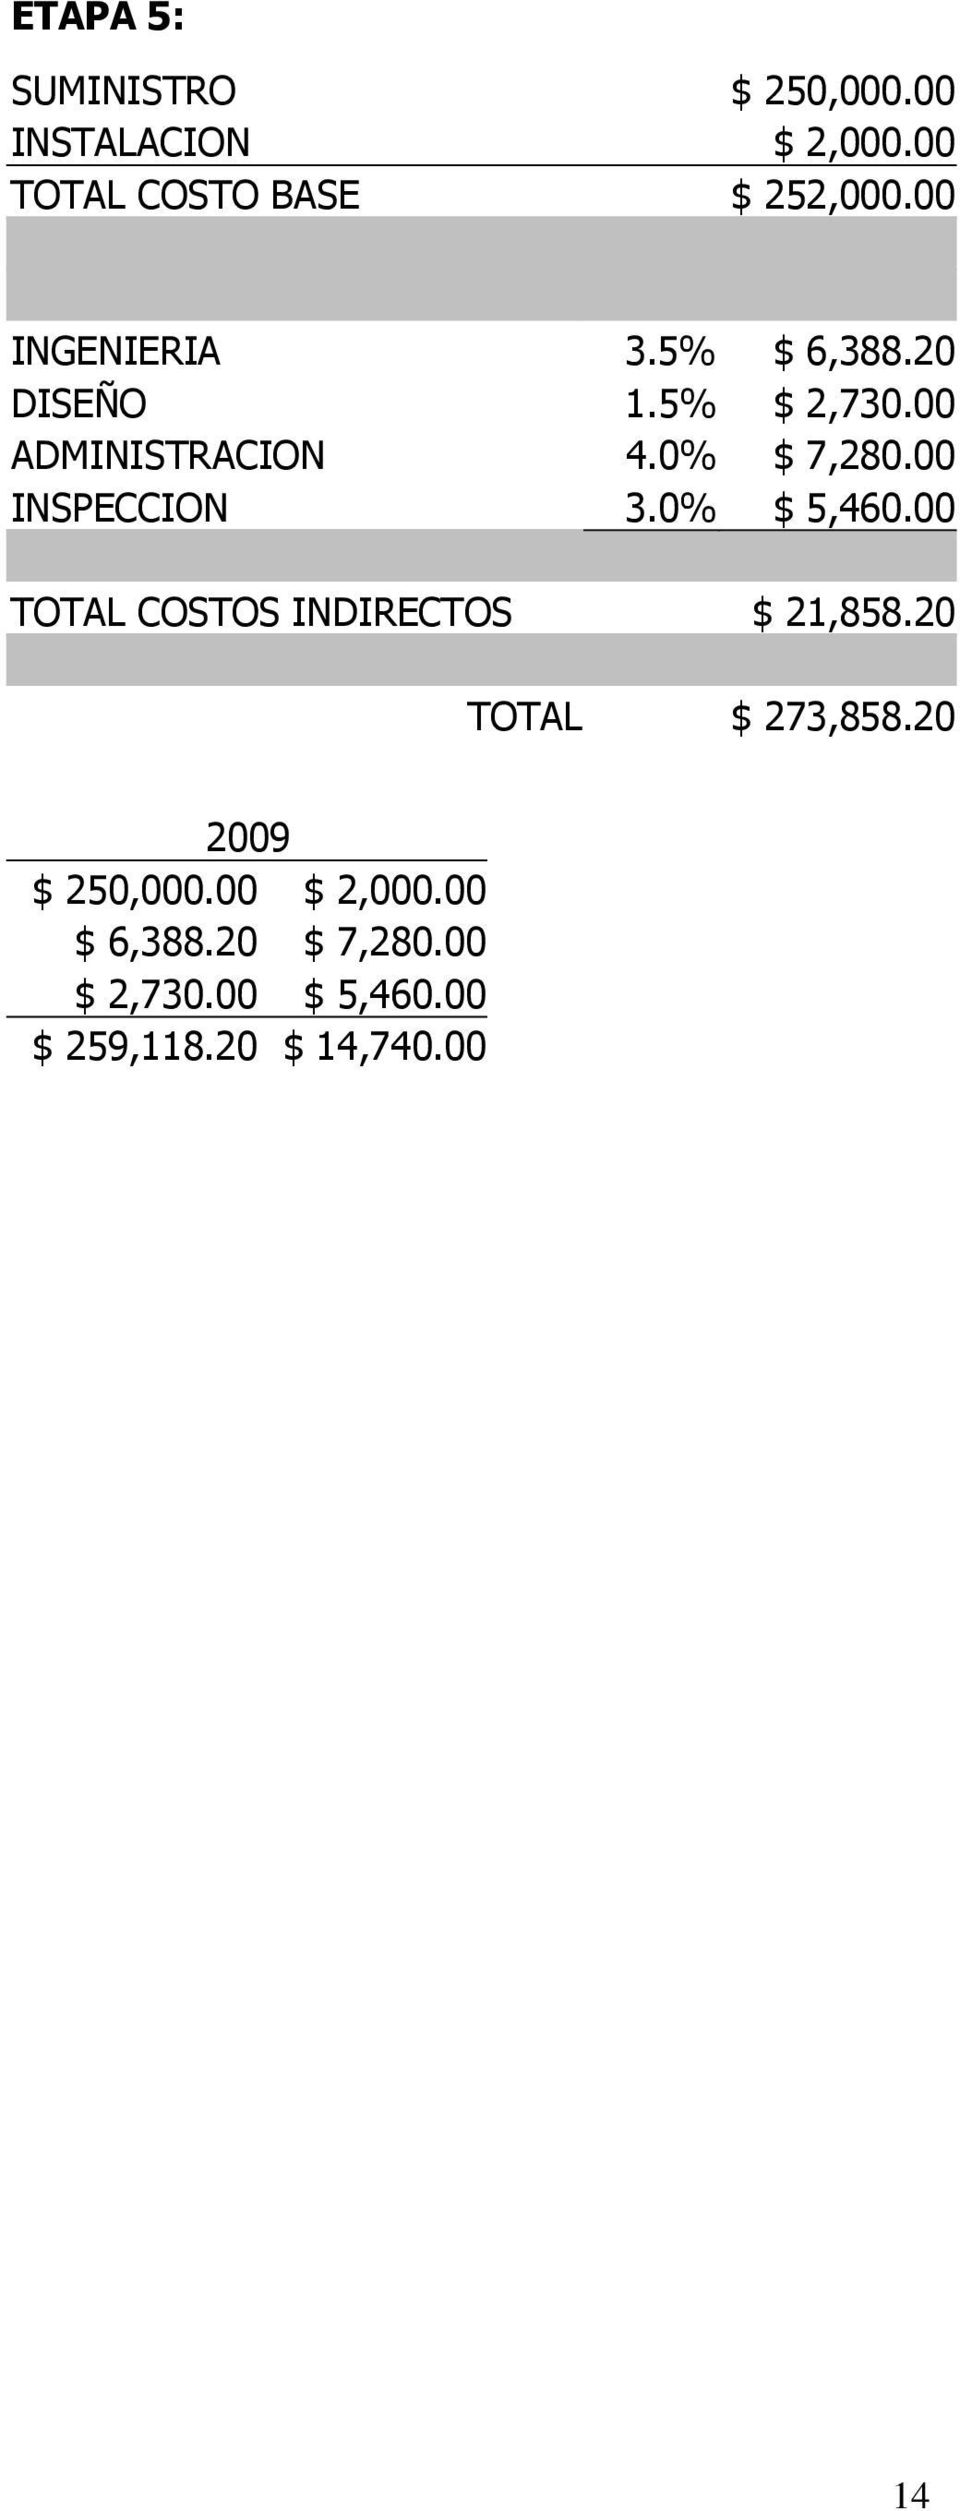 00 INSPECCION 3.0% $ 5,460.00 TOTAL COSTOS INDIRECTOS $ 21,858.20 TOTAL $ 273,858.